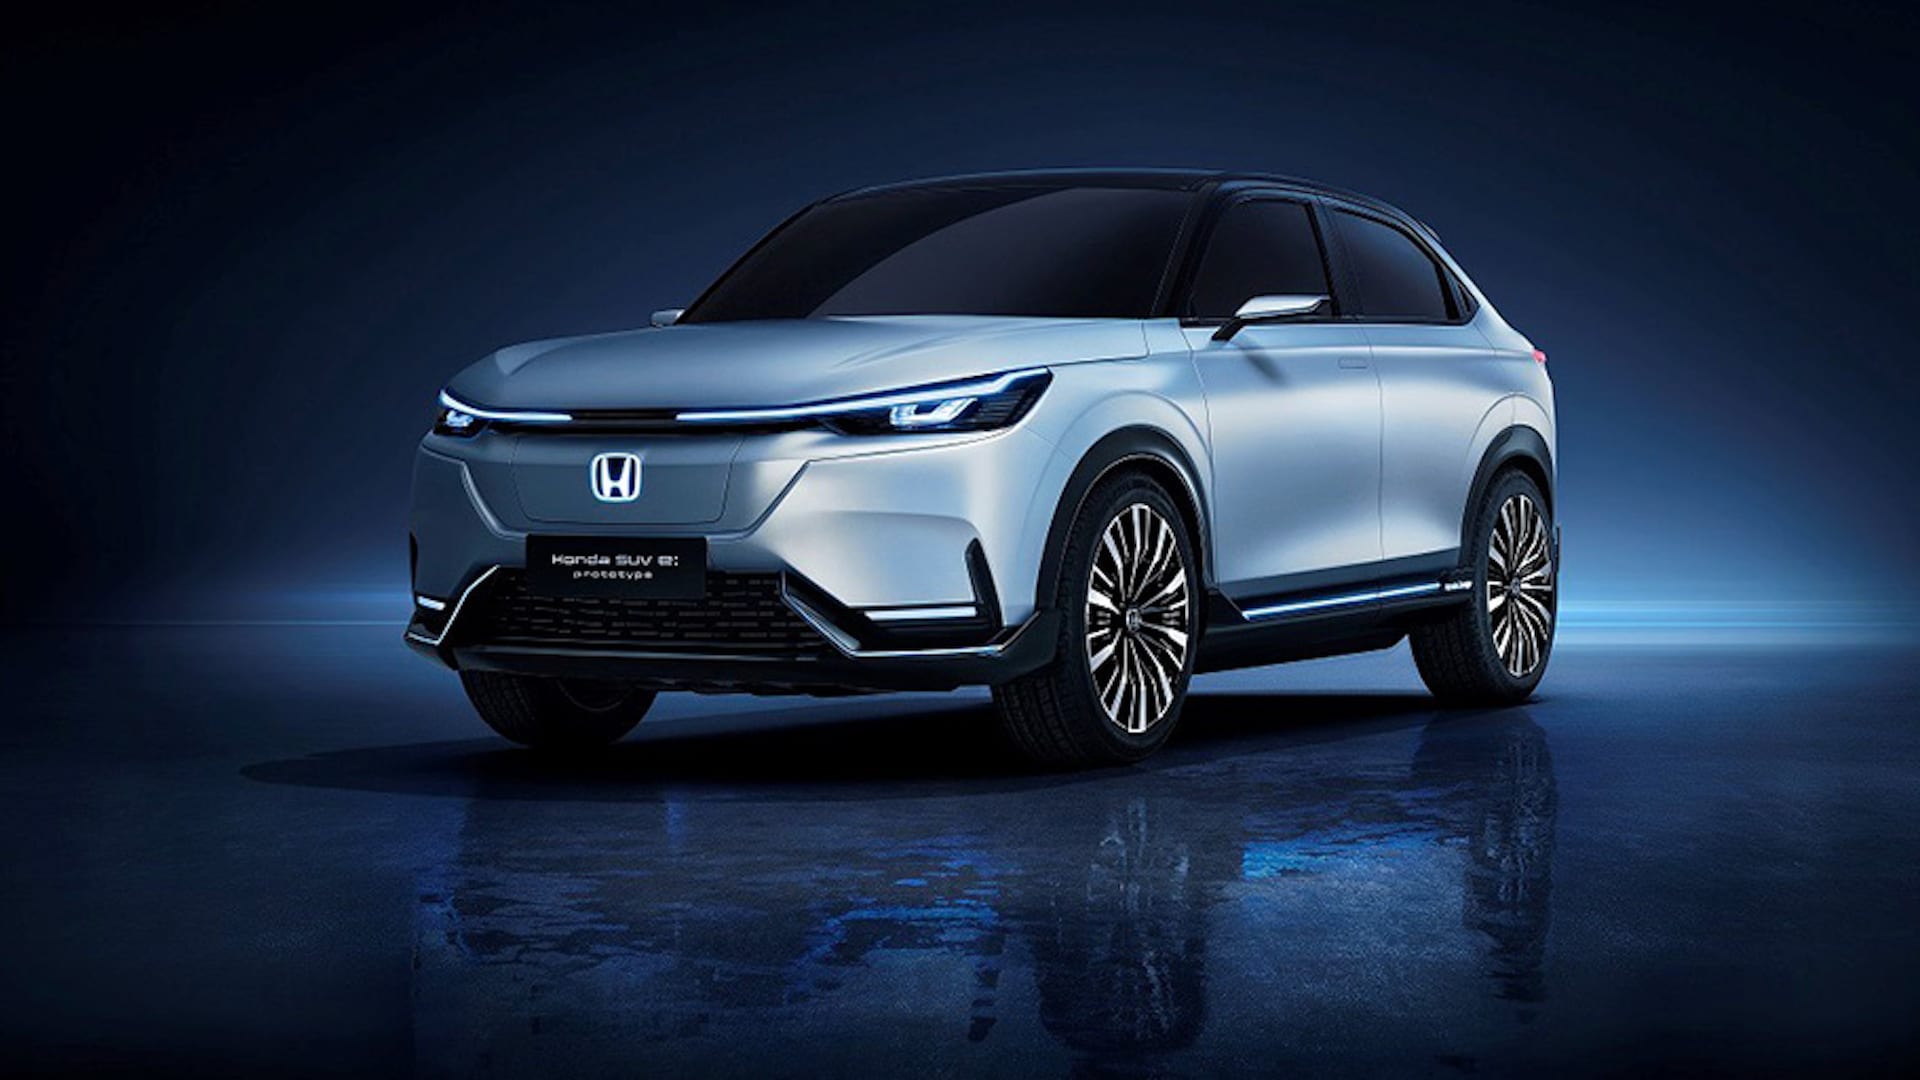 Honda Urban EV  ôtô điện phong cách lạ bán ra từ 2019  VnExpress